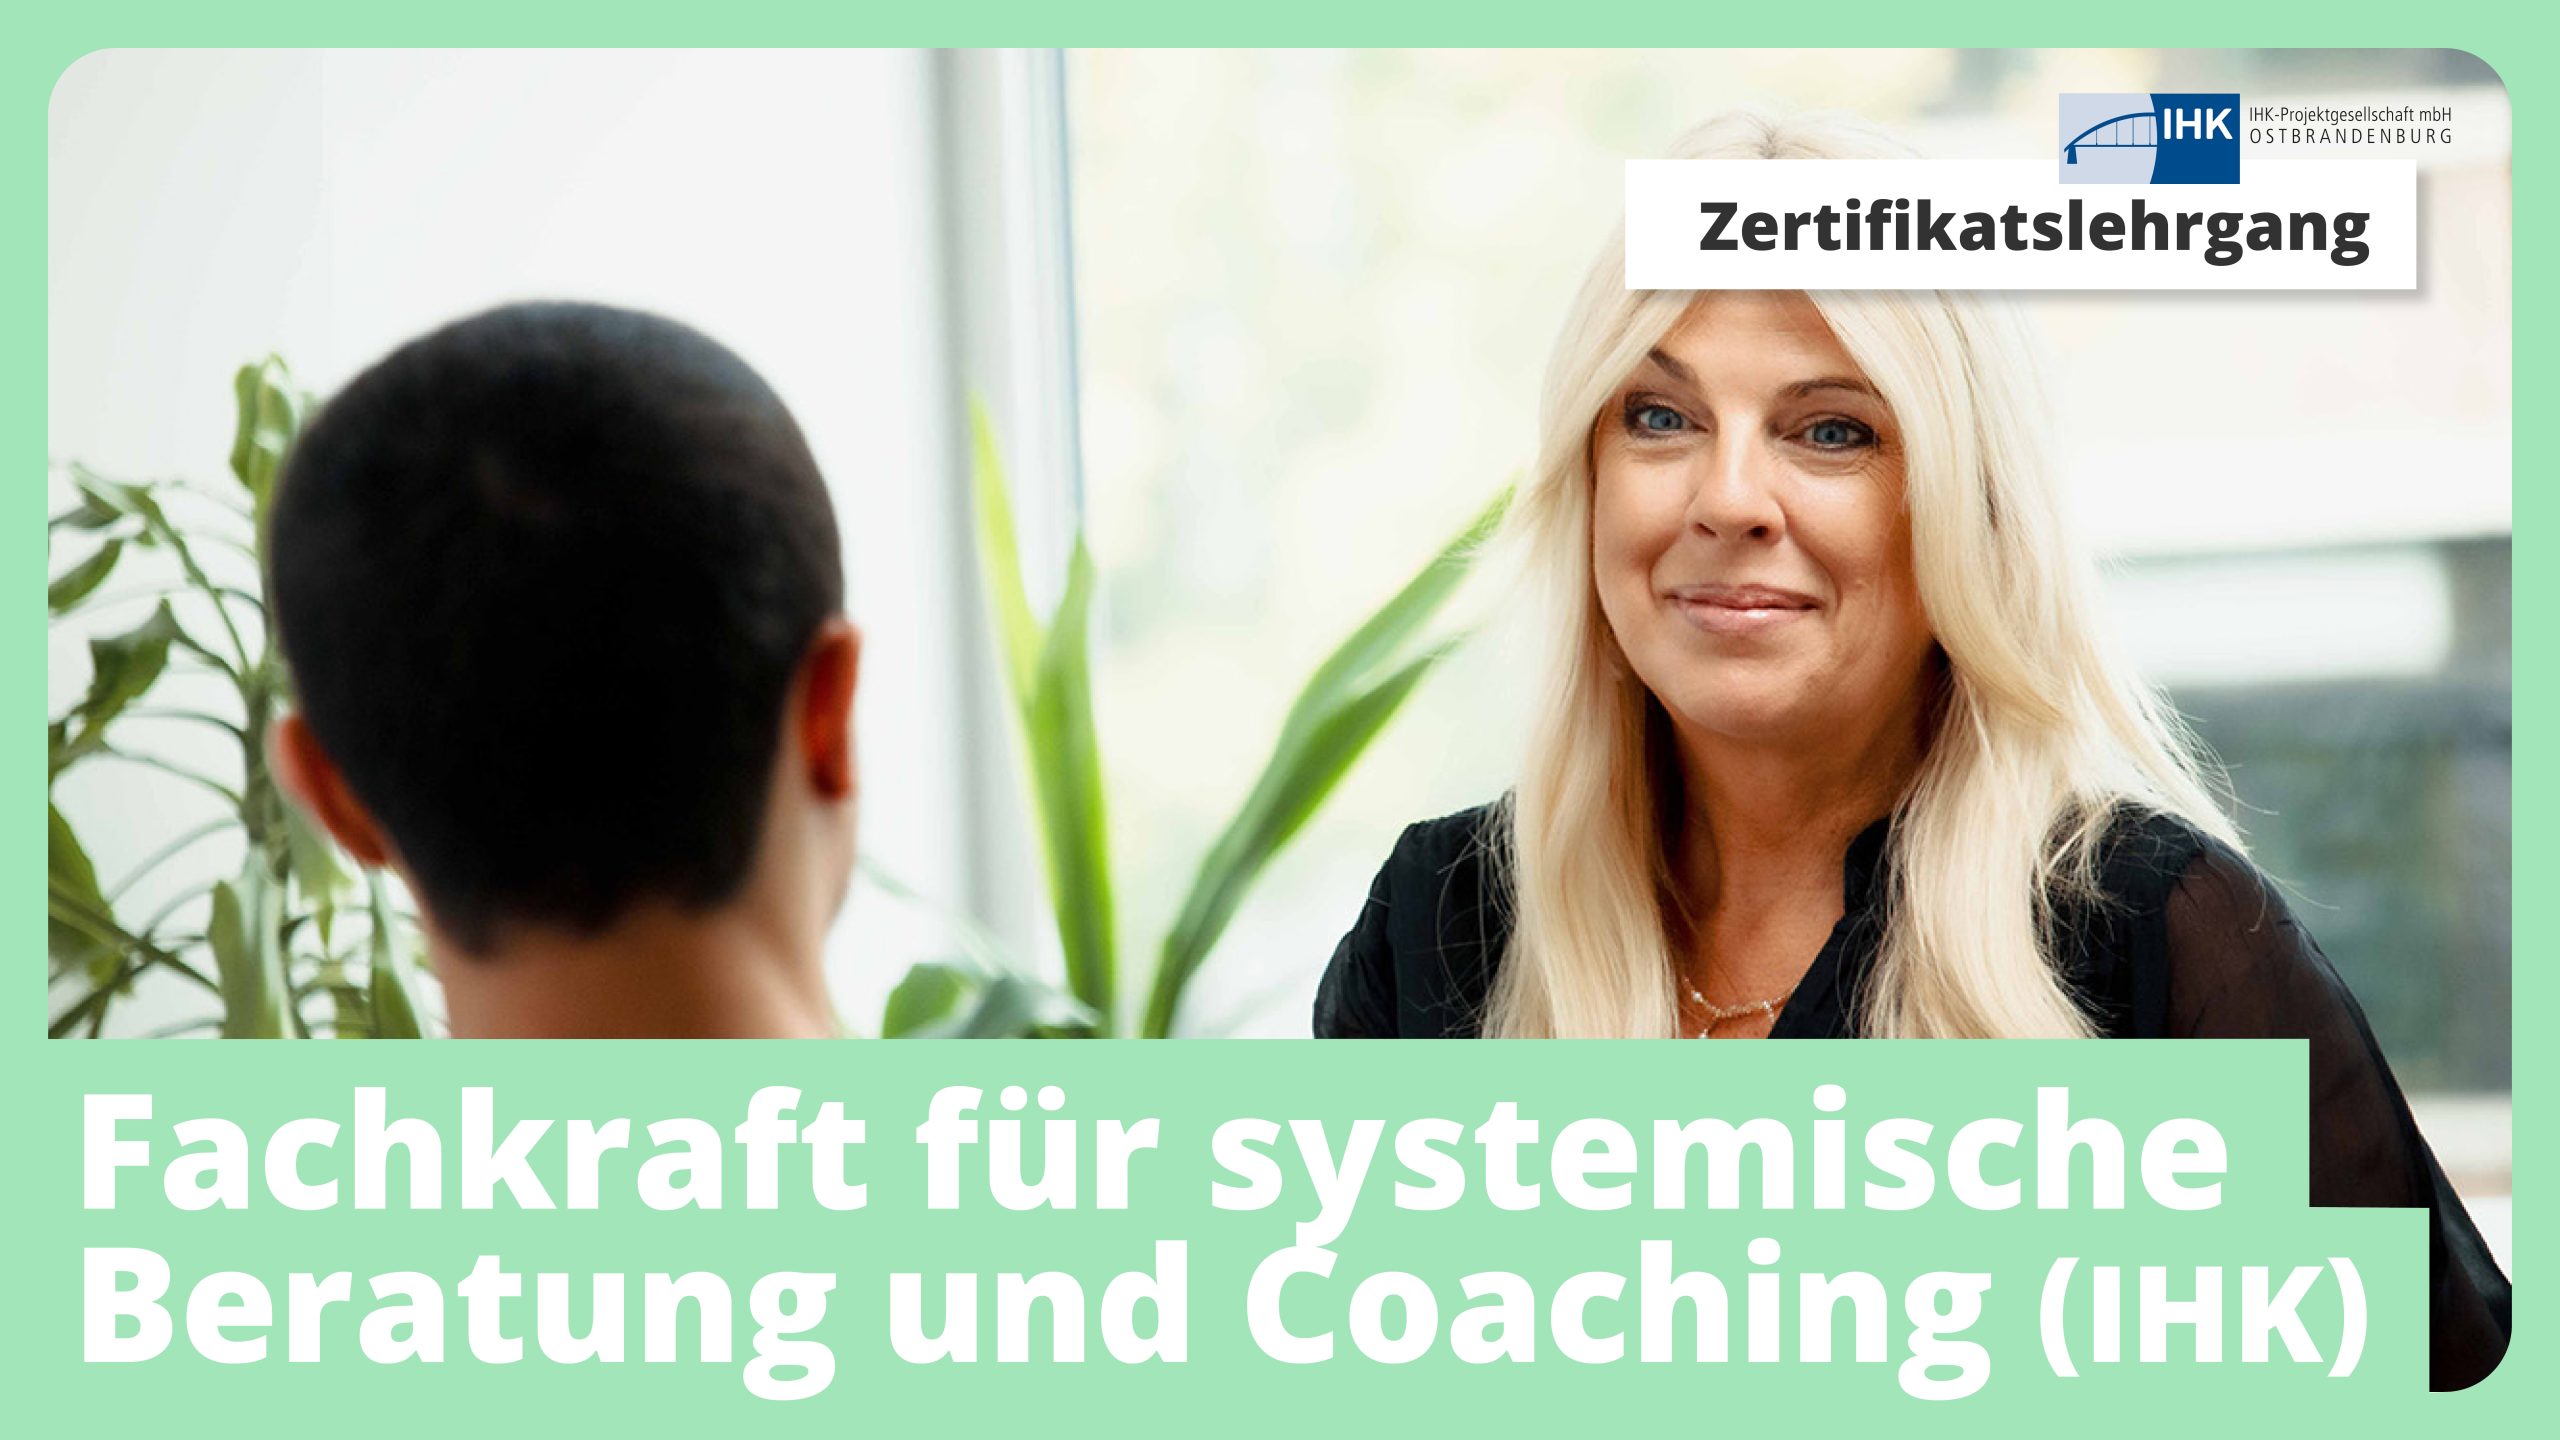 Zertifikatslehrgang: Fachkraft für systemische Beratung und Coaching (IHK)